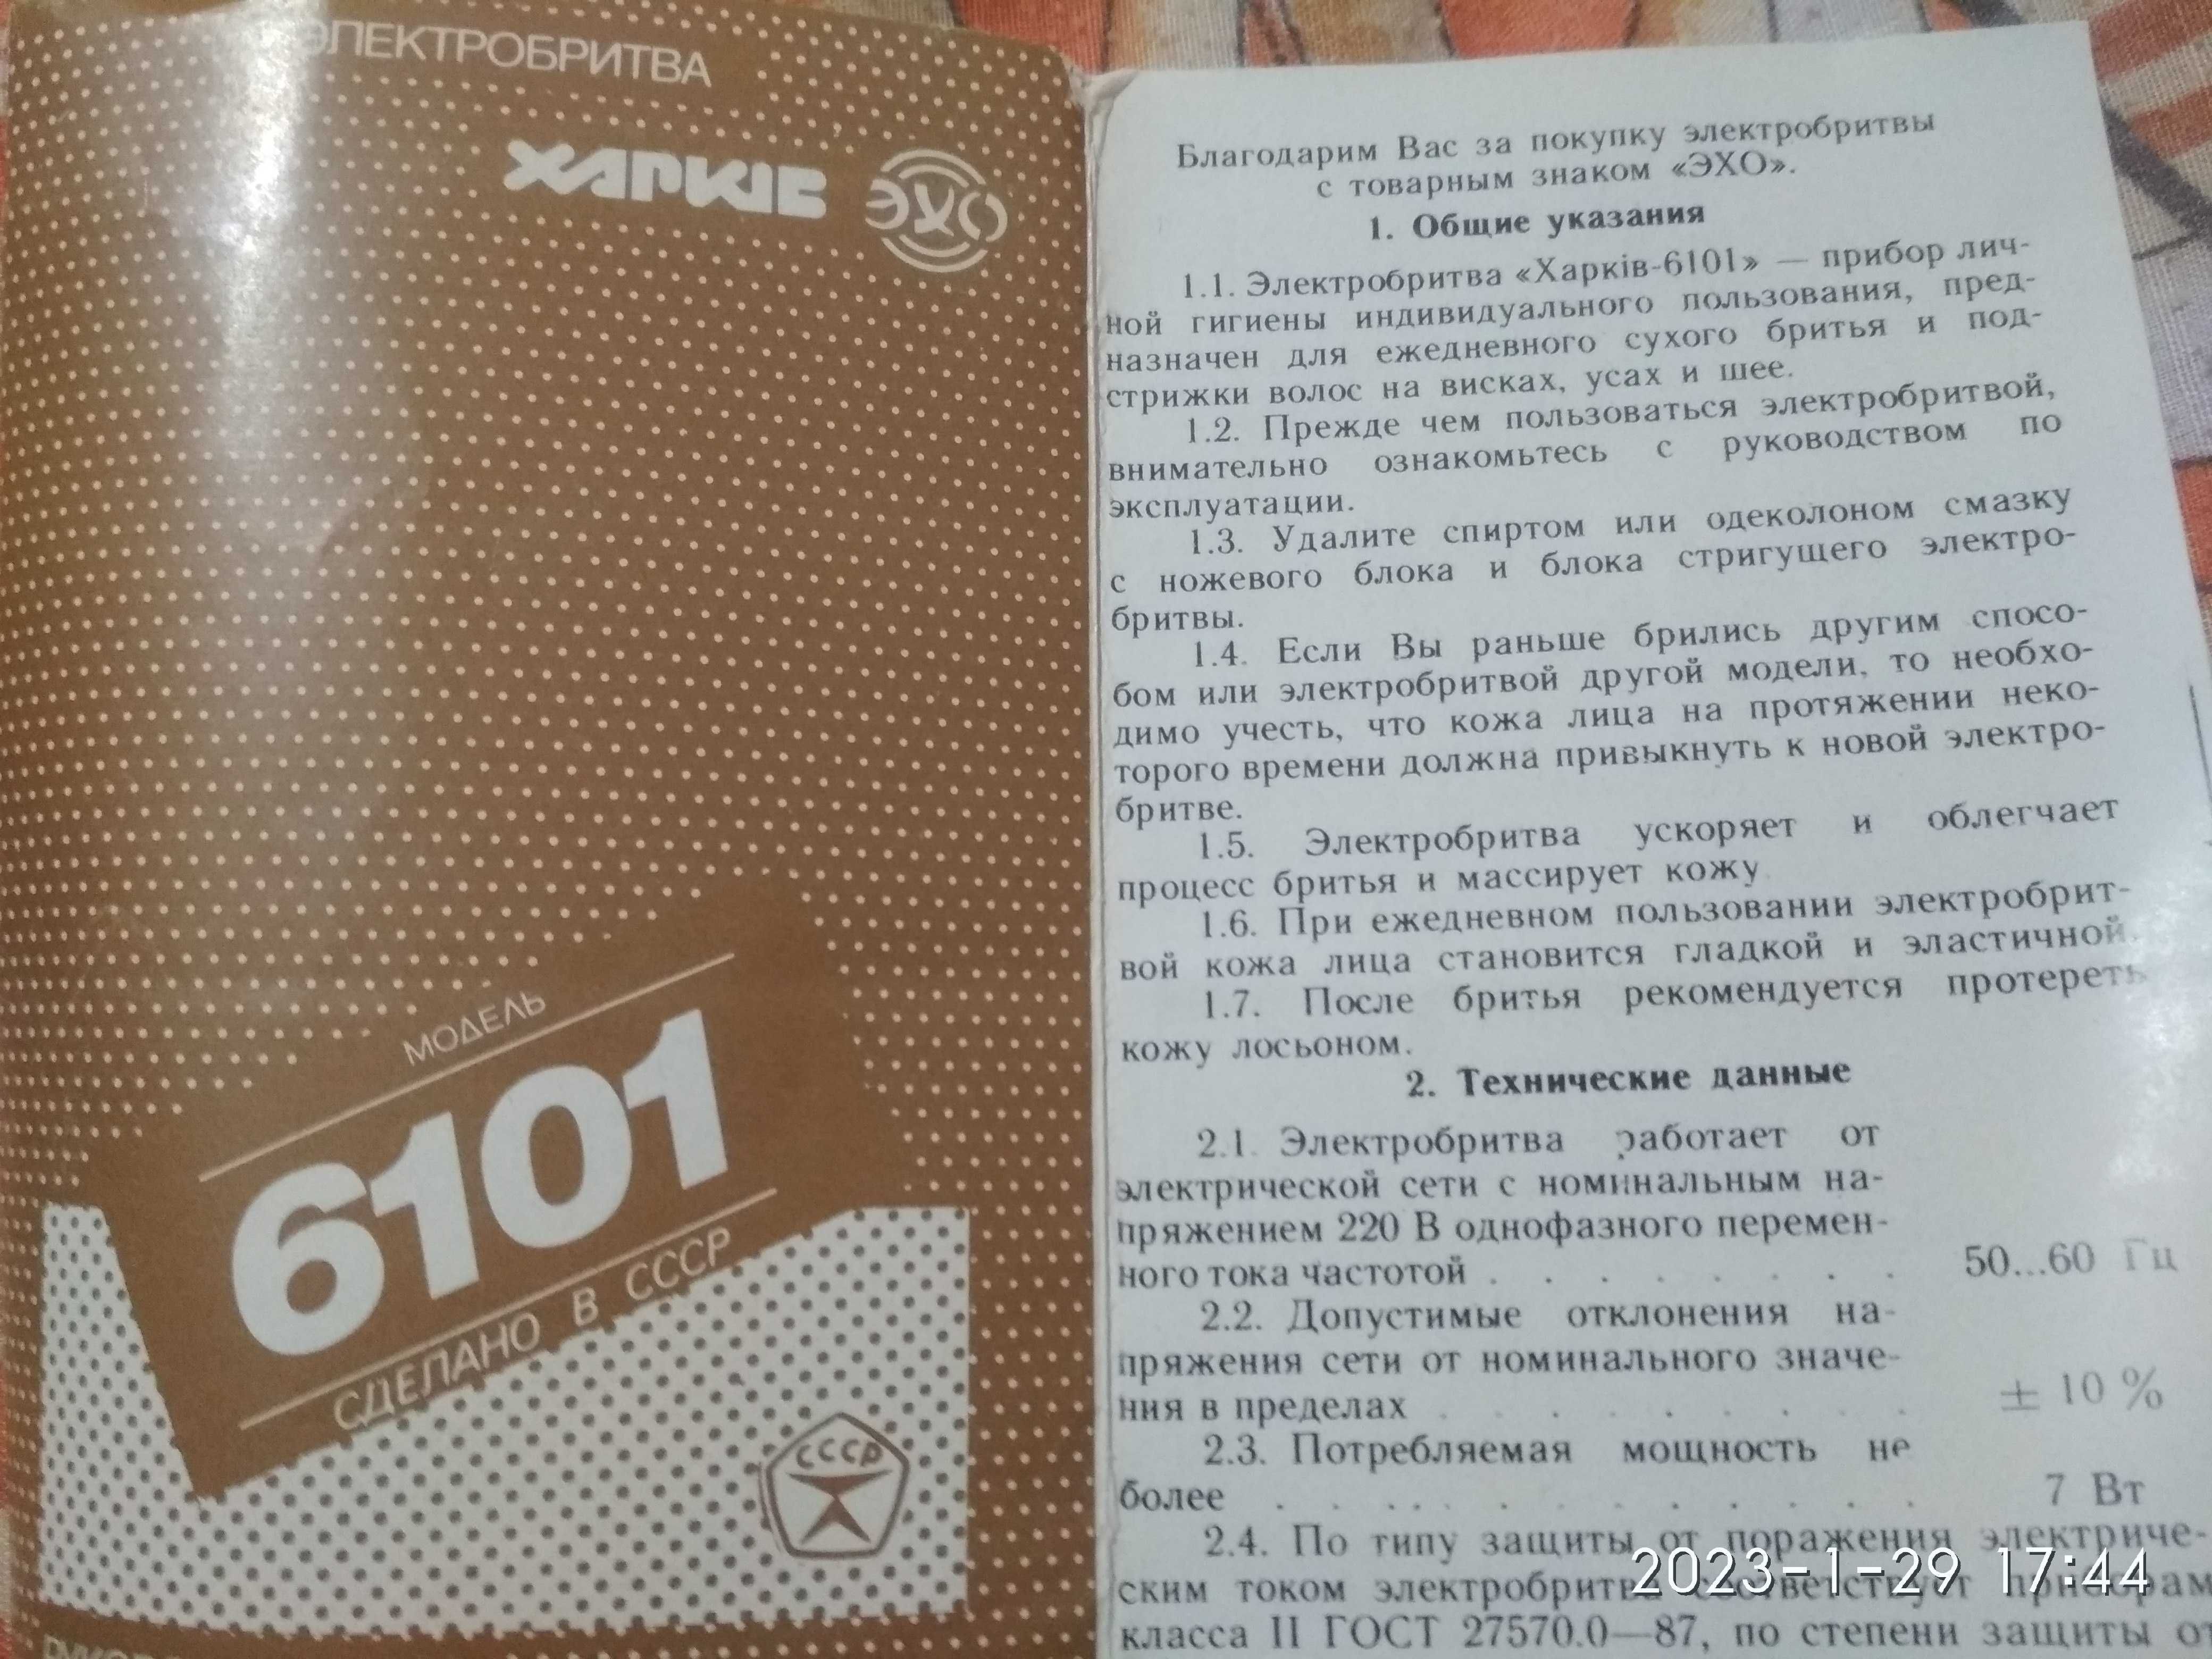 Електробритва Харьків 6101 , нова